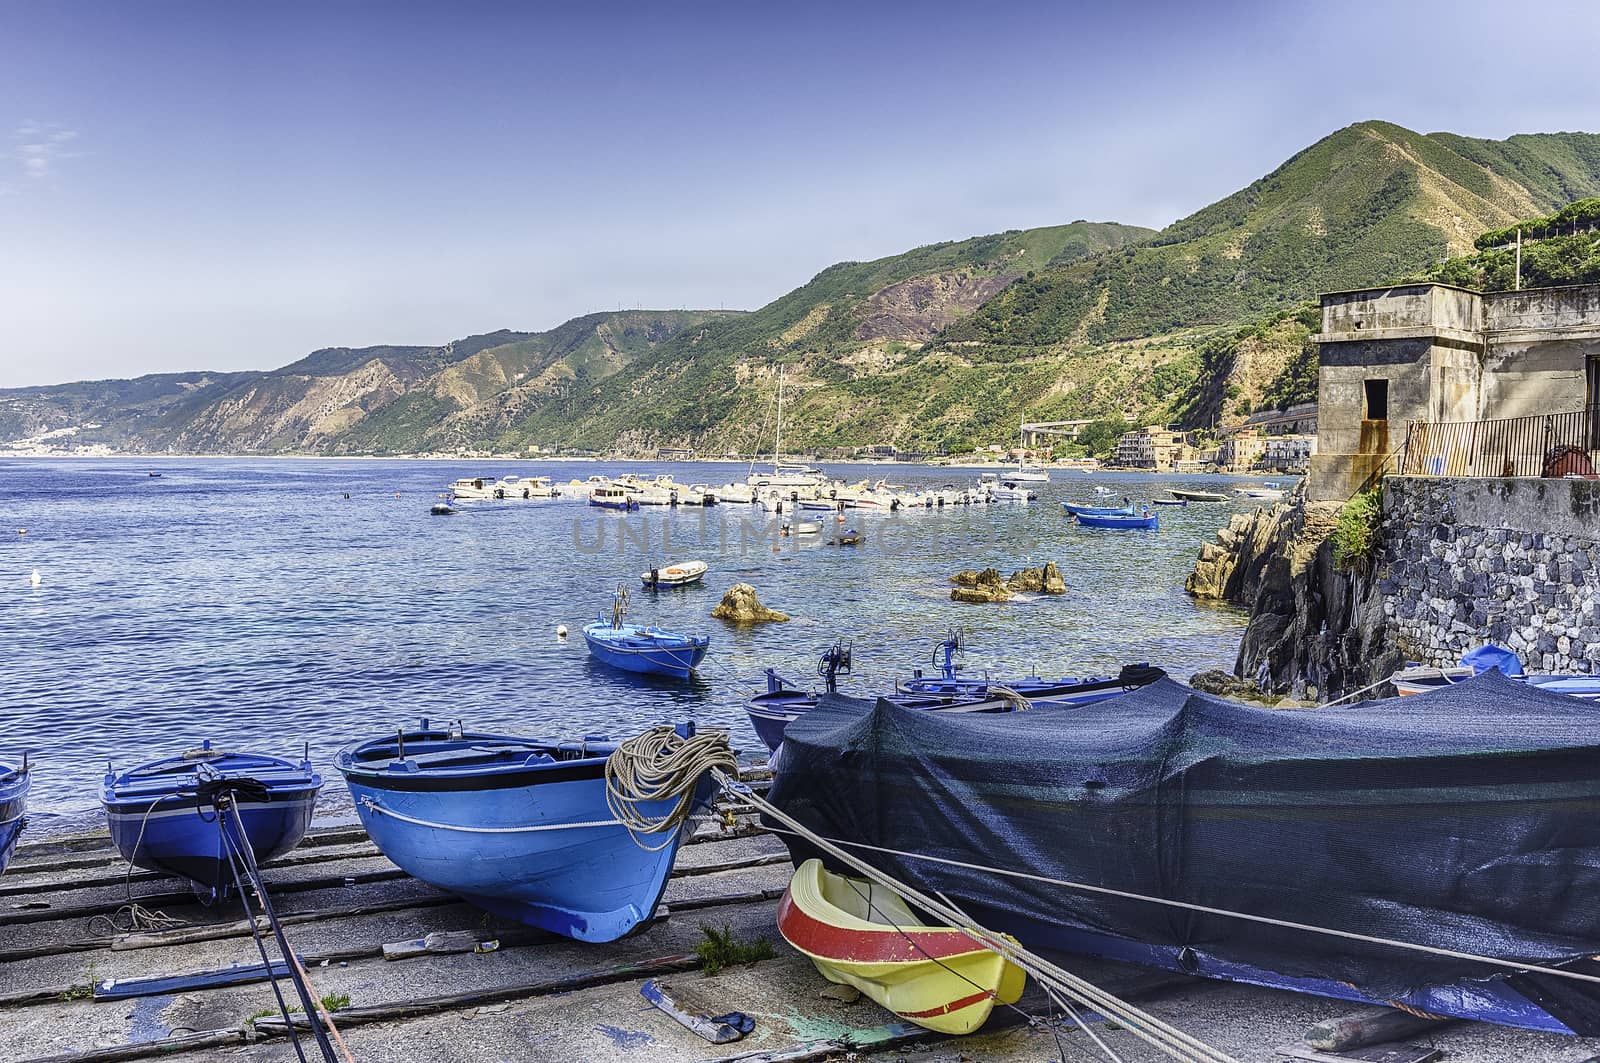 Beautiful seascape in the village of Scilla, Calabria, Italy by marcorubino